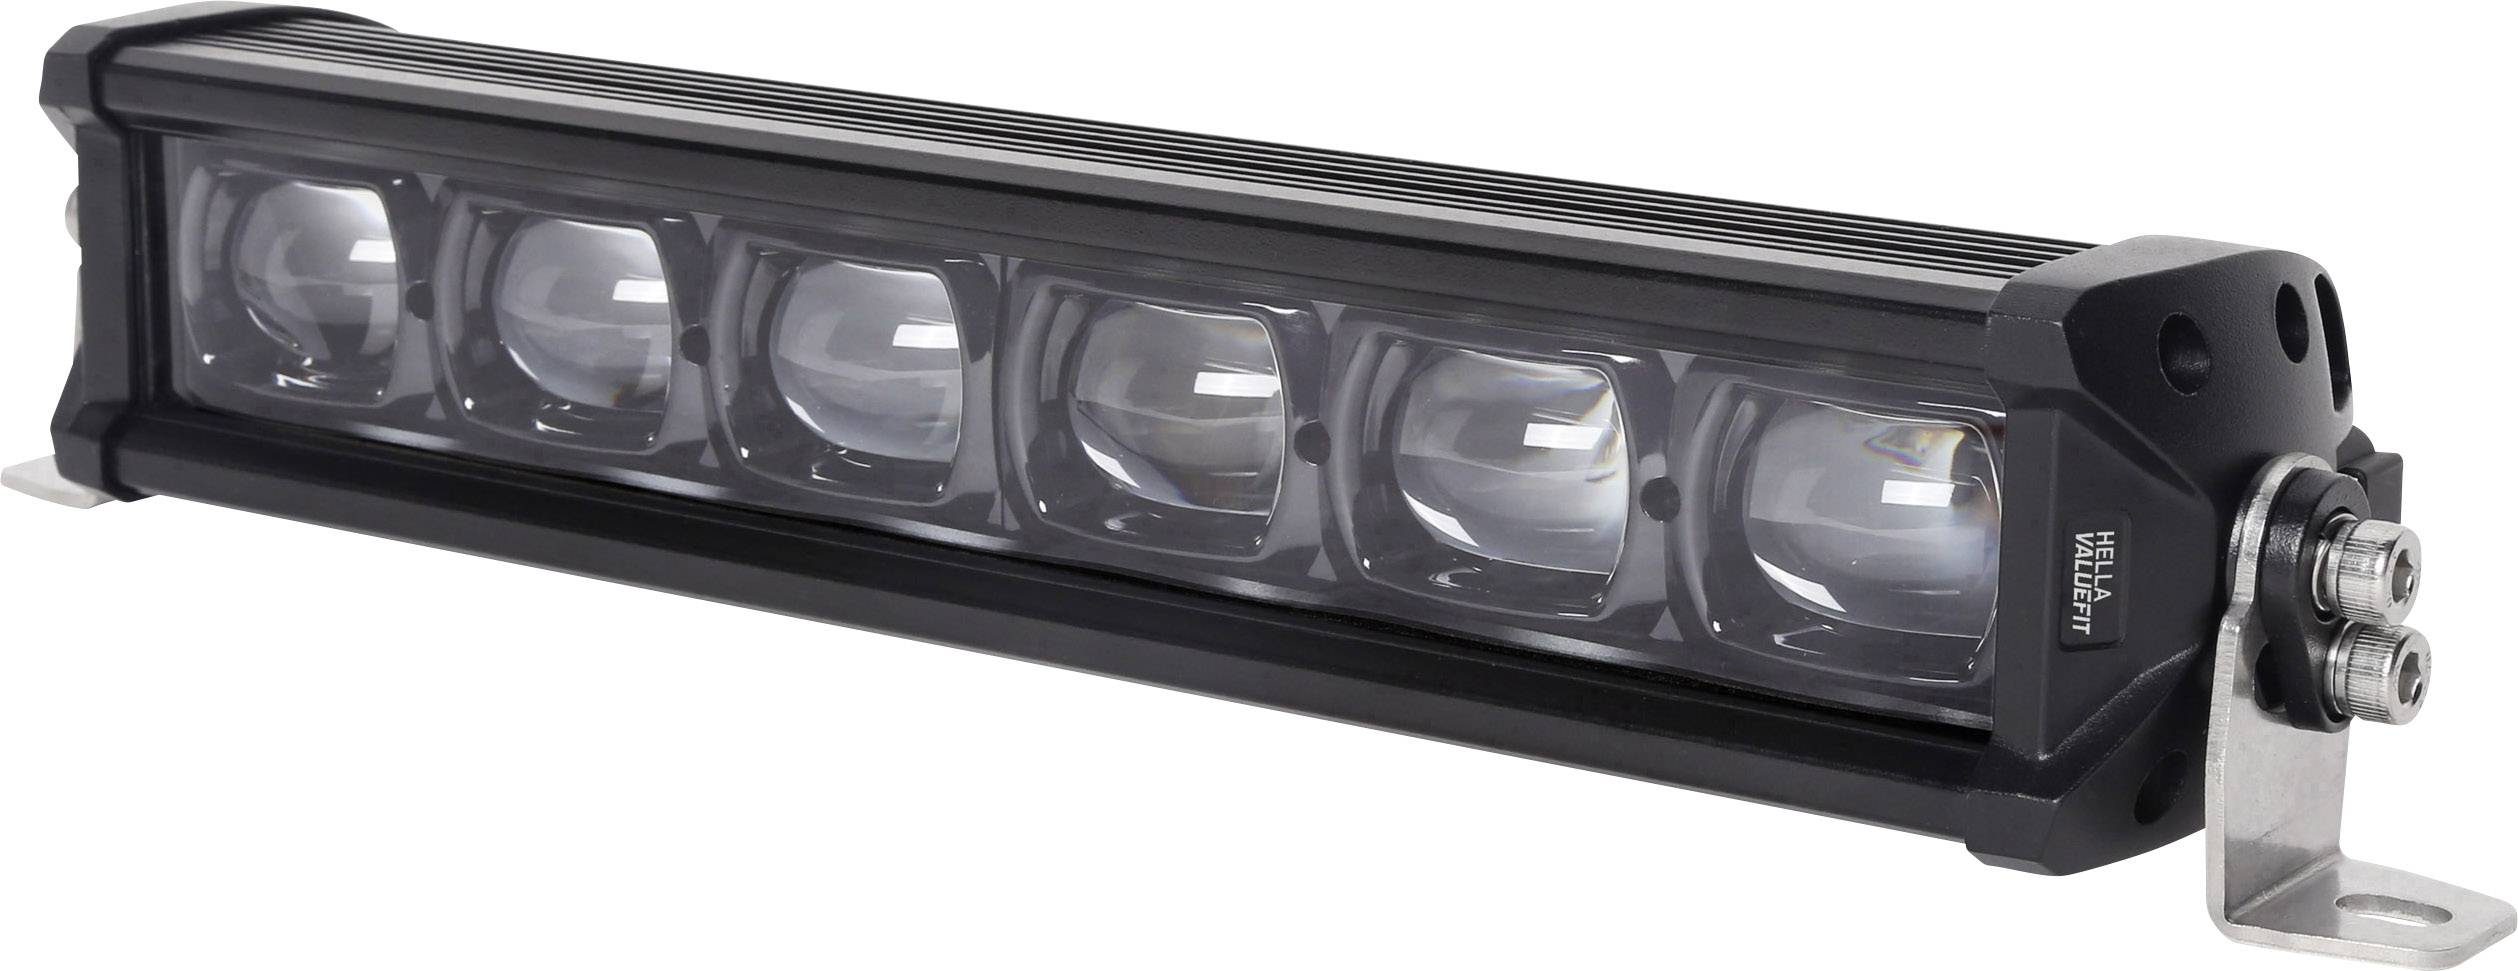 Hella Arbeitsscheinwerfer LED Lightbar LBX-540 - HK Beleuchtungstechnik -  Licht ist mehr als Helligkeit